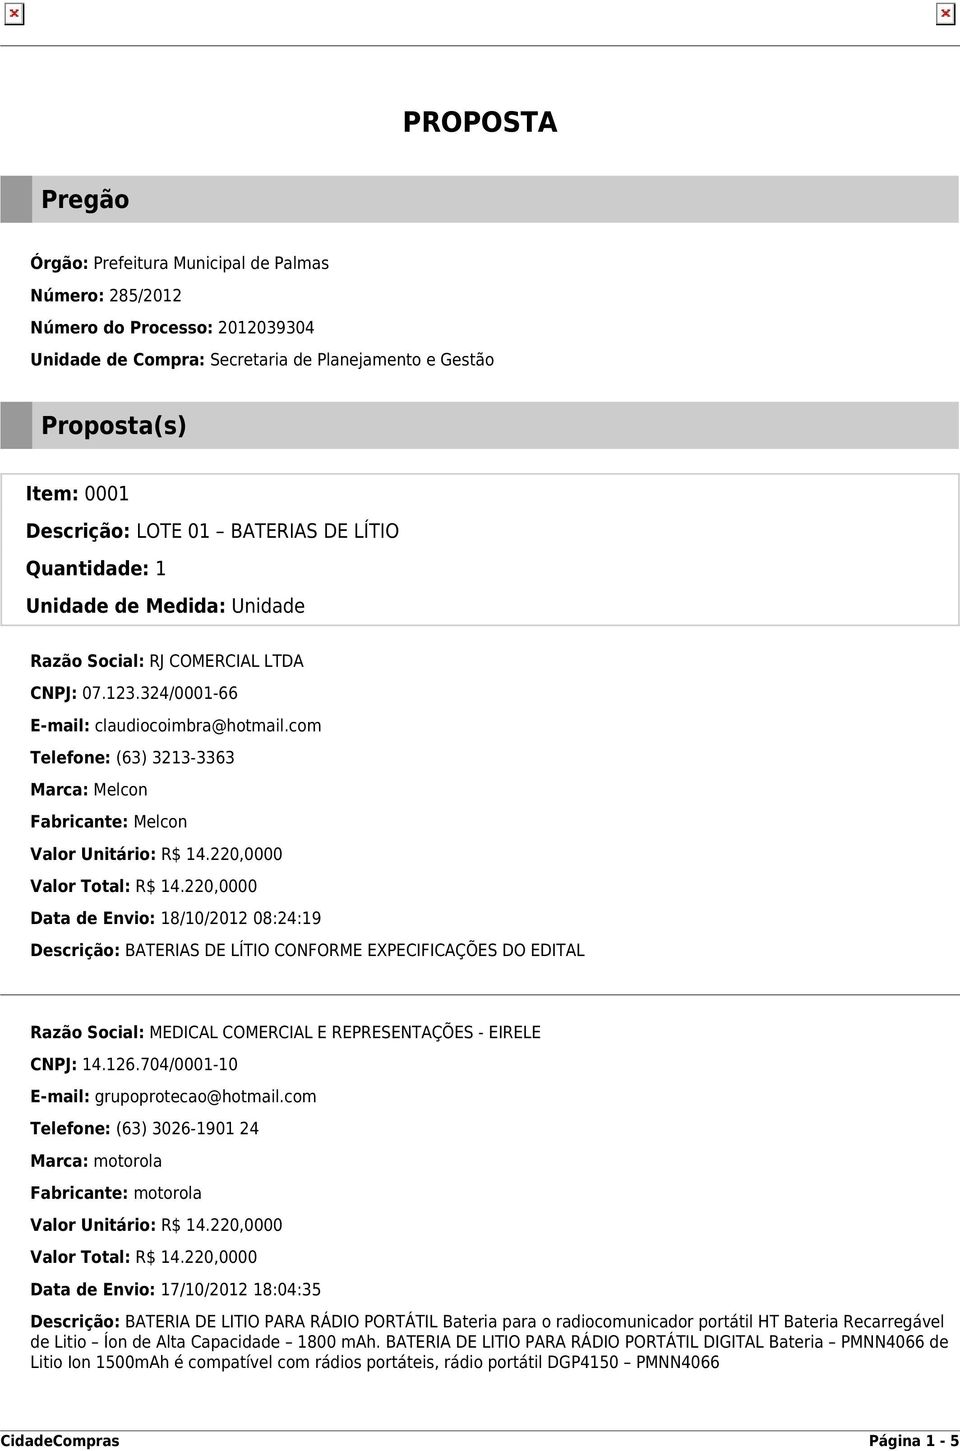 Data de Envio: 17/10/2012 18:04:35 Descrição: BATERIA DE LITIO PARA RÁDIO PORTÁTIL Bateria para o radiocomunicador portátil HT Bateria Recarregável de Litio Íon de Alta Capacidade